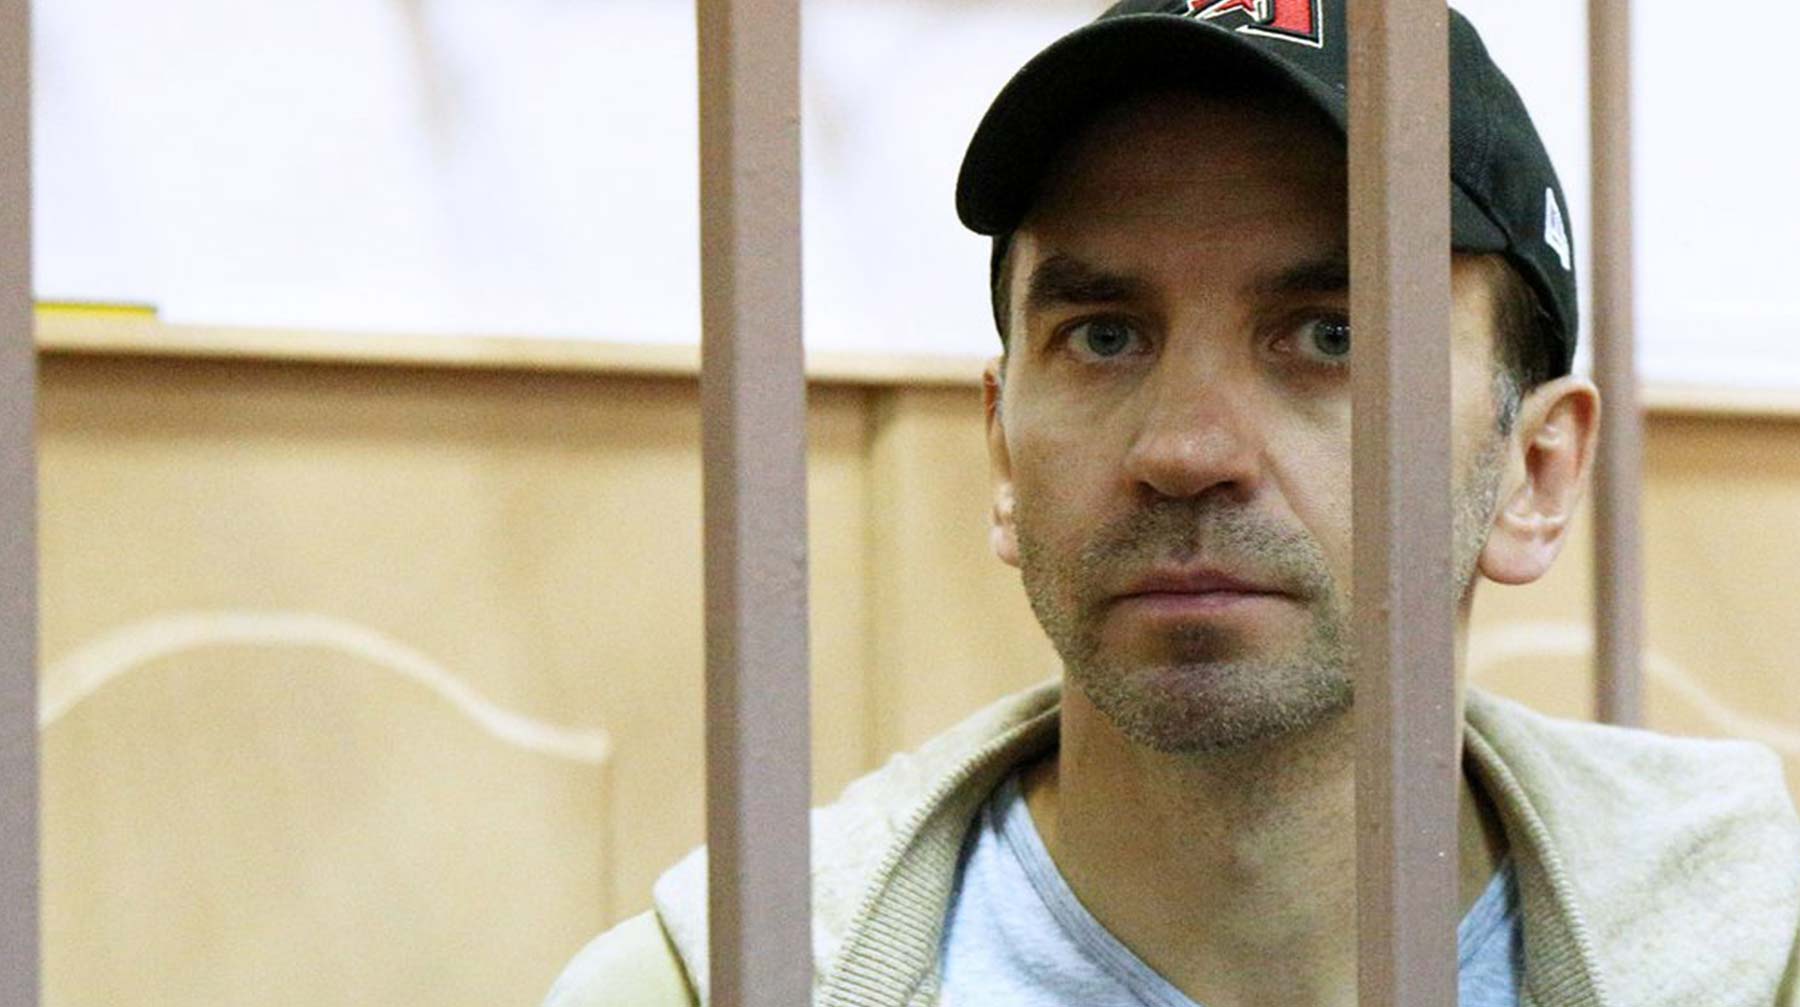 По словам следователя, была попытка снять денежные средства с арестованного ранее банковского счета обвиняемого Михаил Абызов